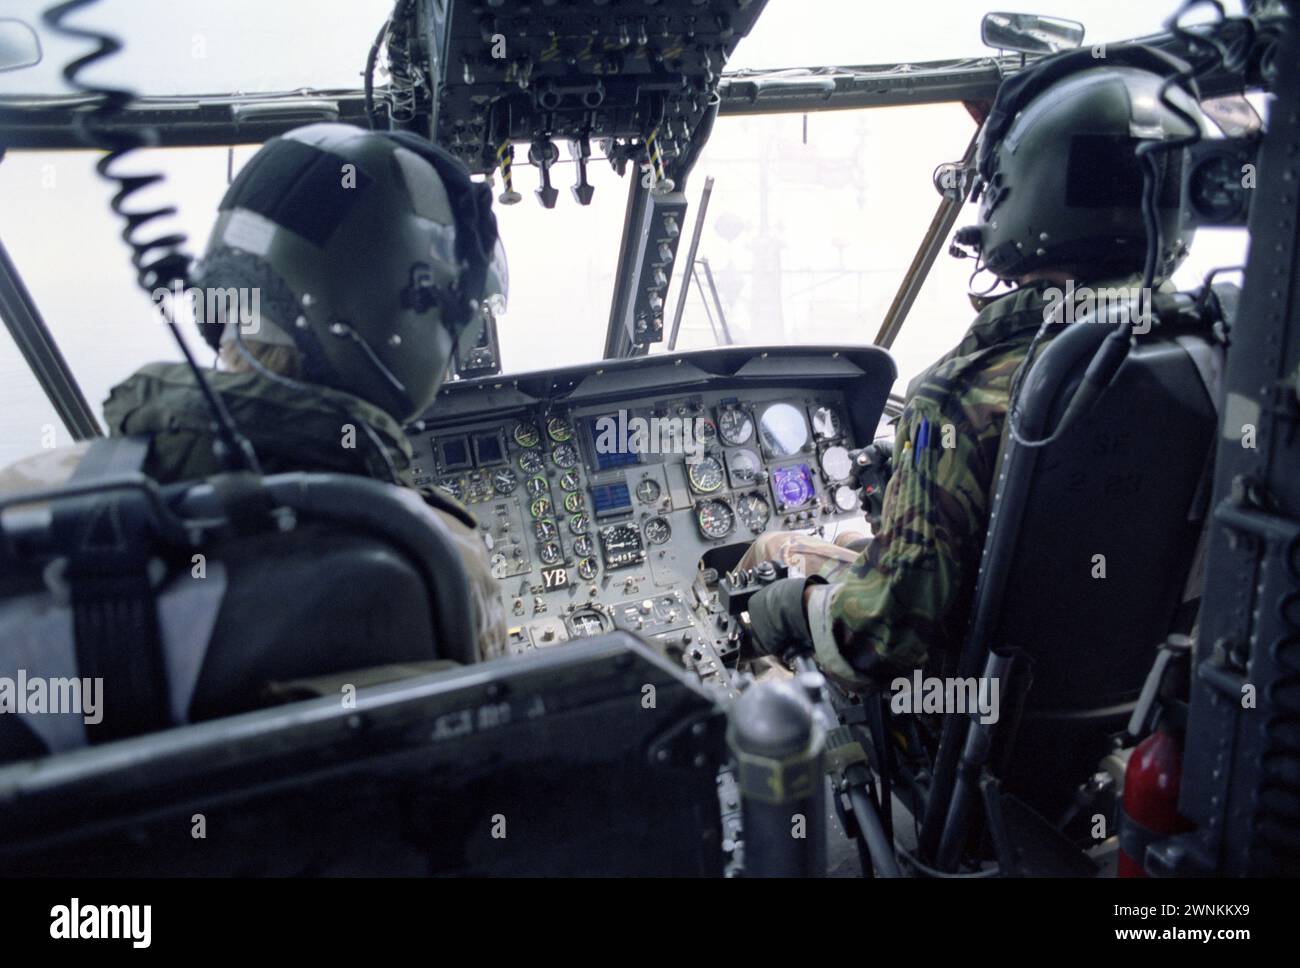 20 mars 1991 la vue à l'intérieur du cockpit d'un hélicoptère Sea King de la RAF alors qu'il planait près de la superstructure du HMS Dulverton dans le golfe Persique. Banque D'Images